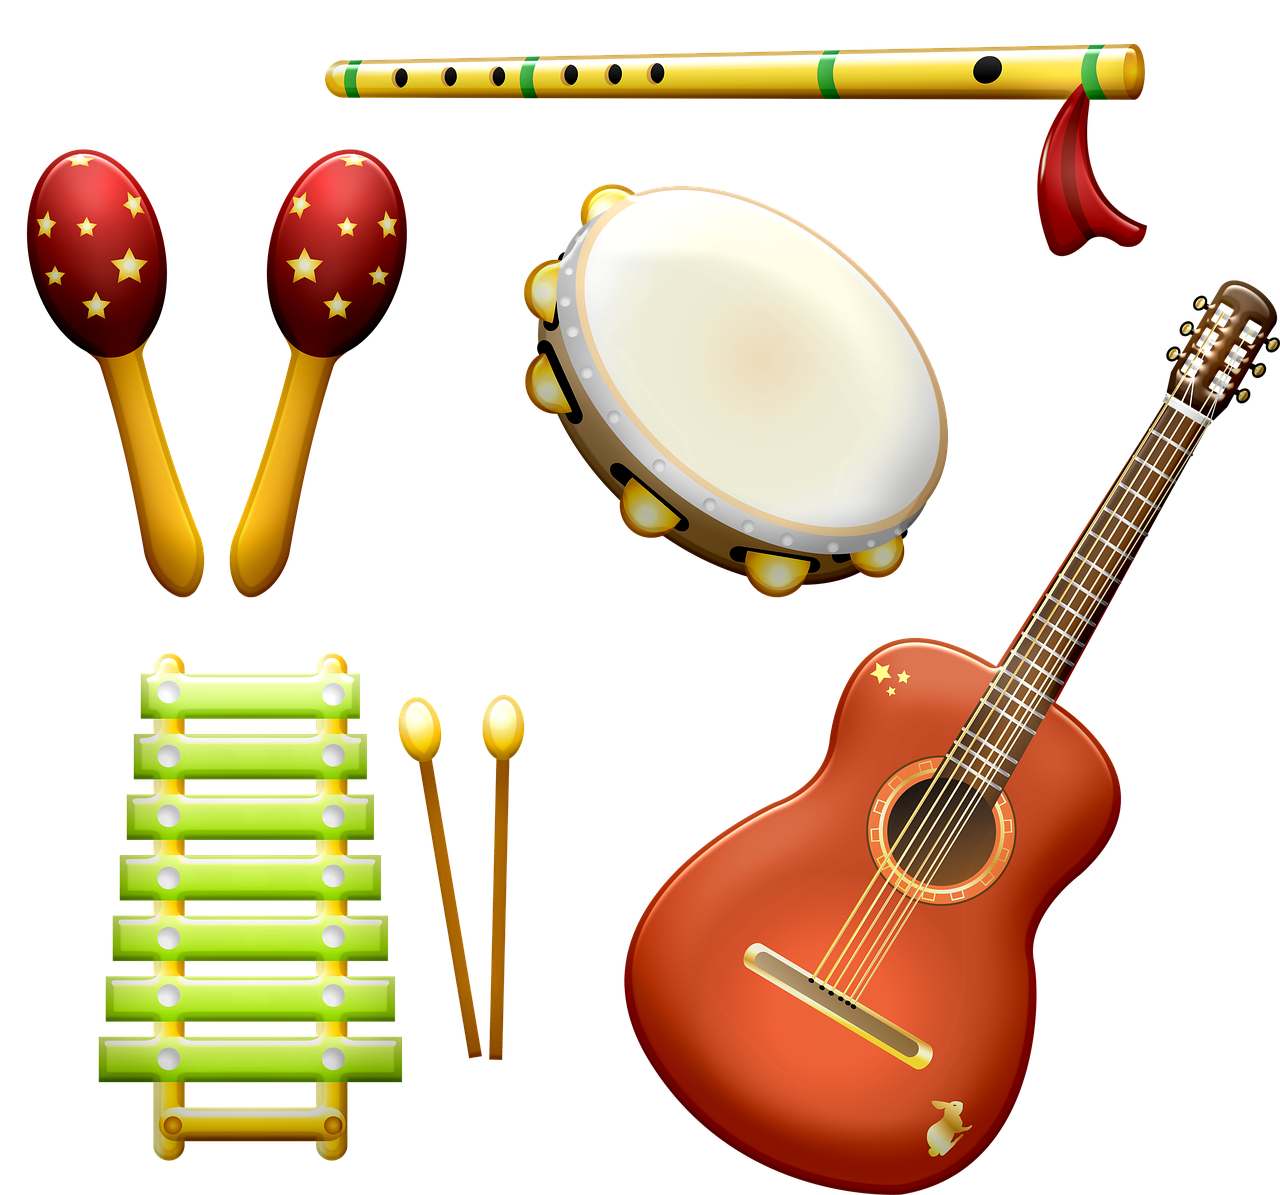 Узнали музыкальный инструмент. Музыкальные инструменты. Музыкалныеинструменты. Детские музыкальные инструменты. Музыкальные инструменты для дошкольников.